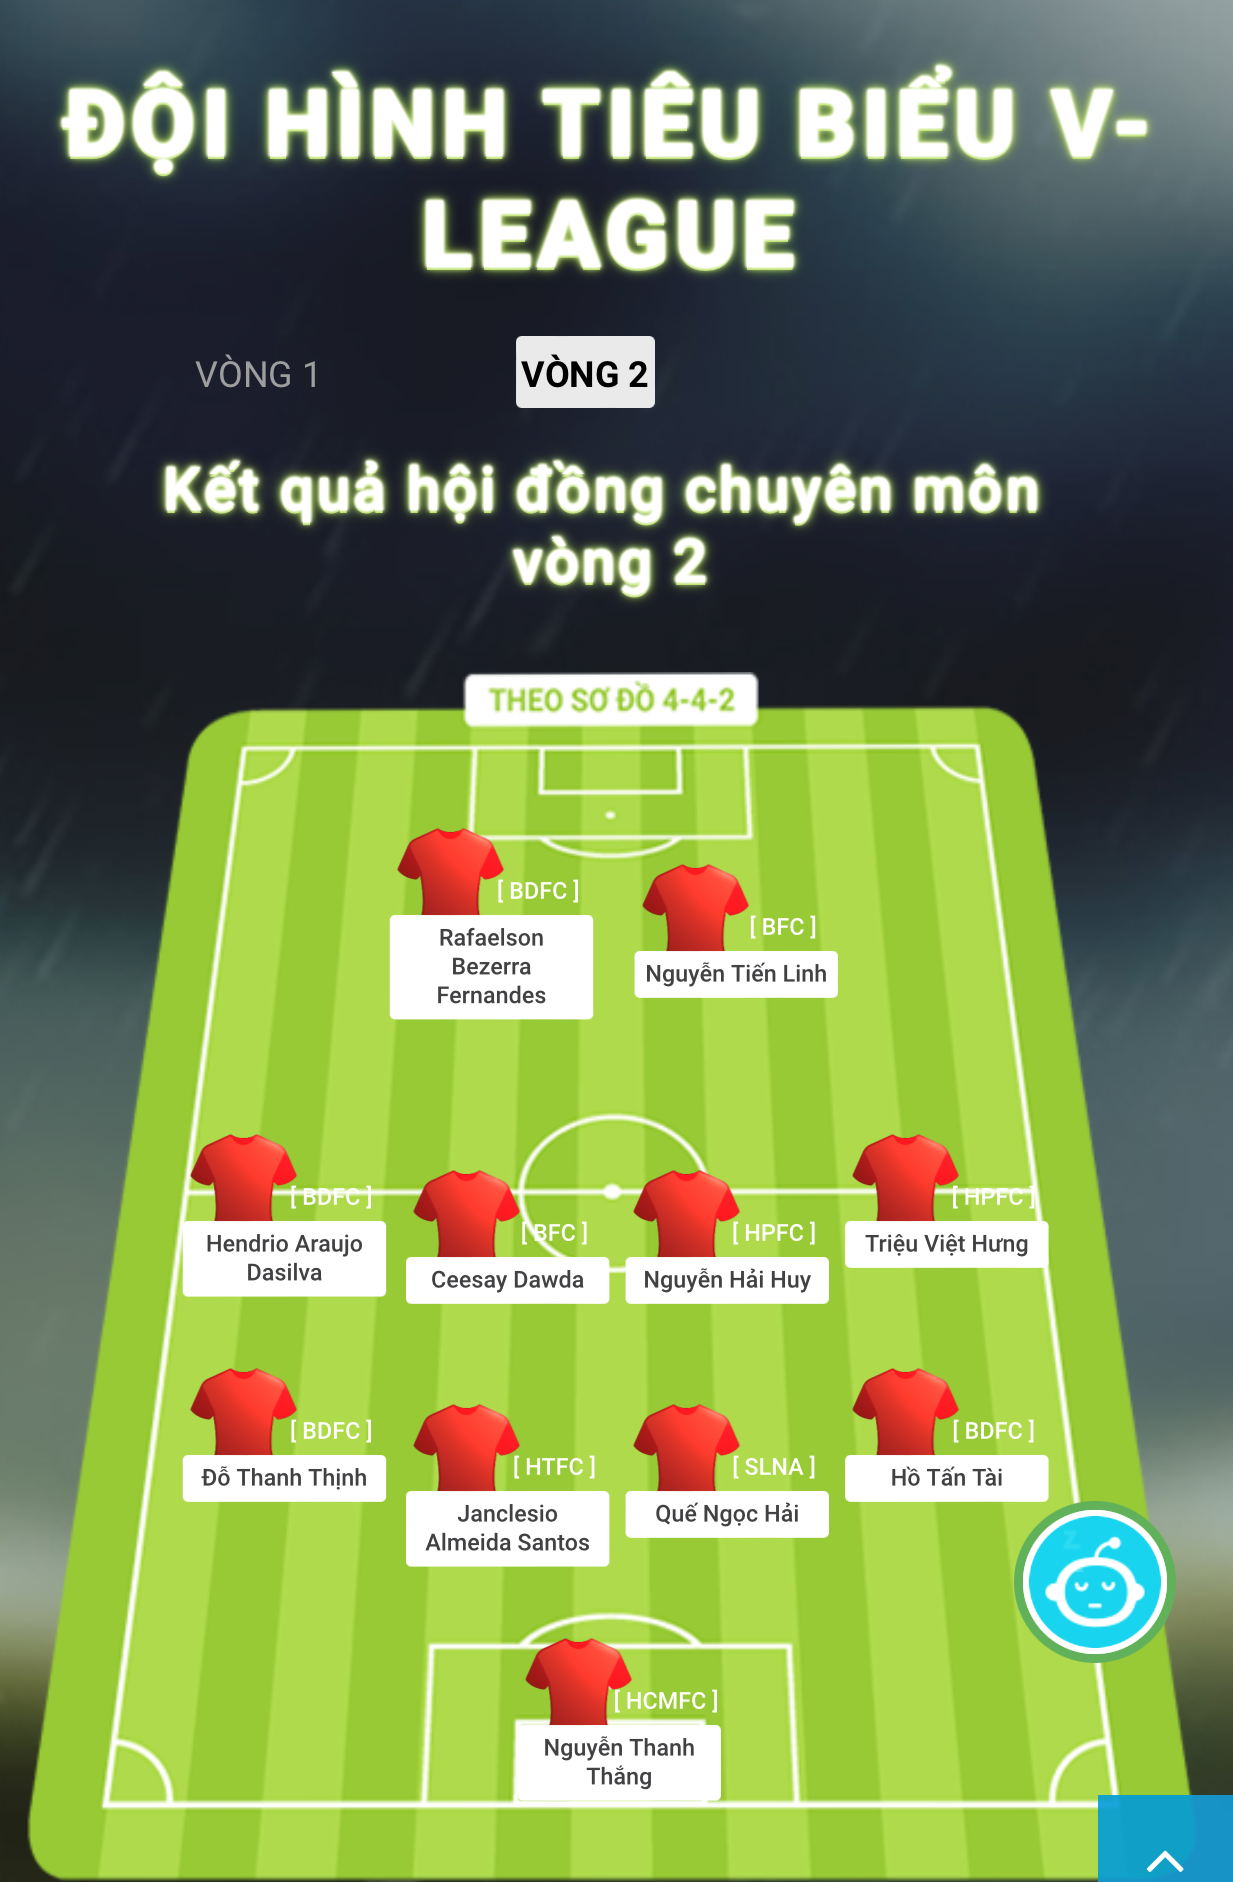 CLB Bình Định thắng lớn đội hình tiêu biểu vòng 2 V-League - ảnh 10